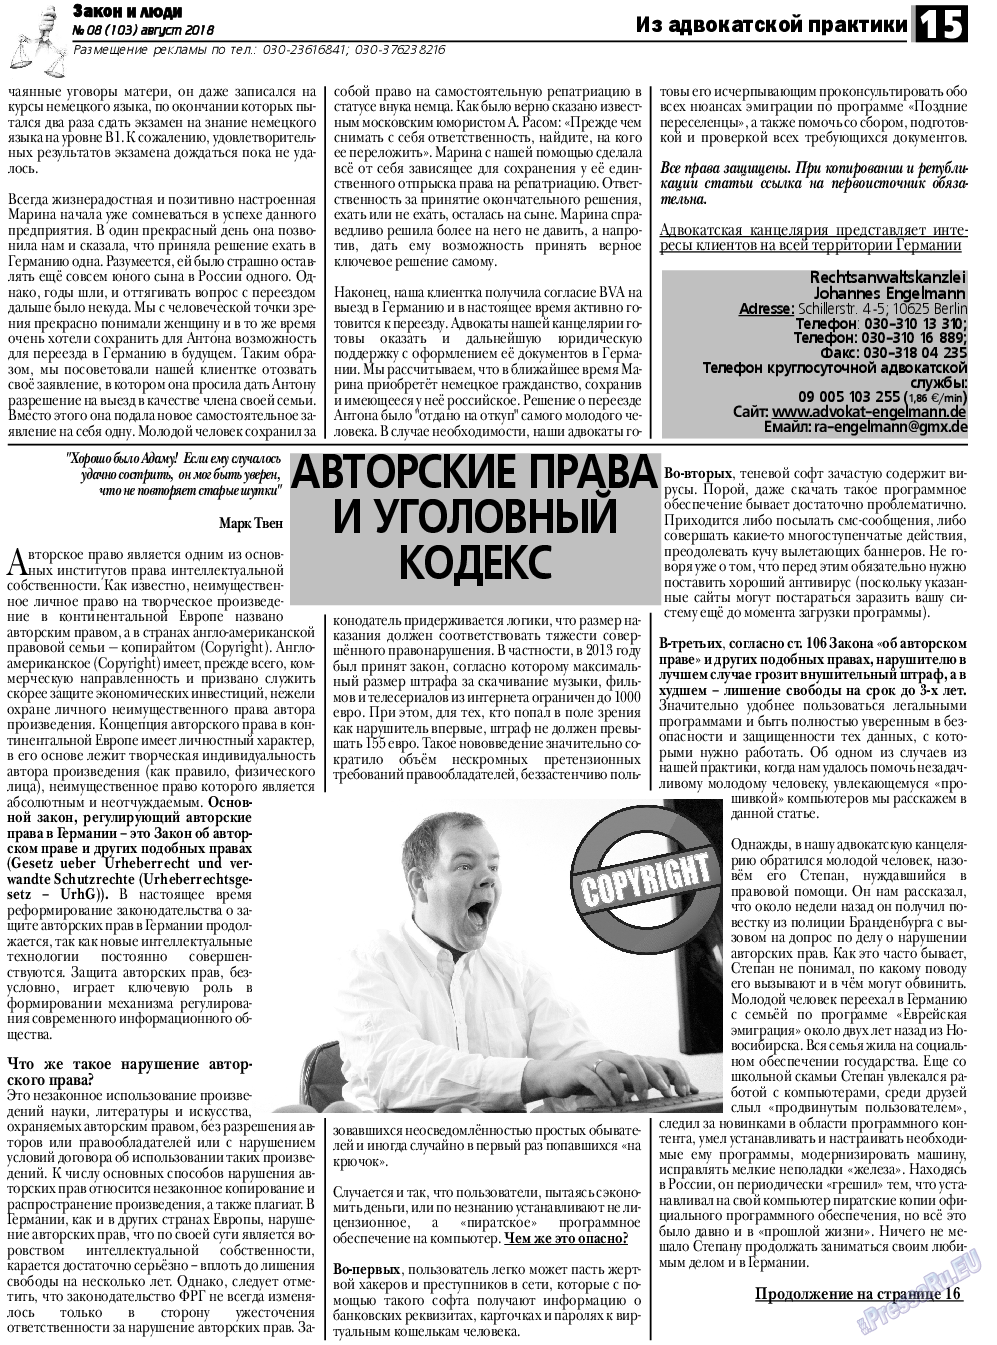 Закон и люди, газета. 2018 №8 стр.15